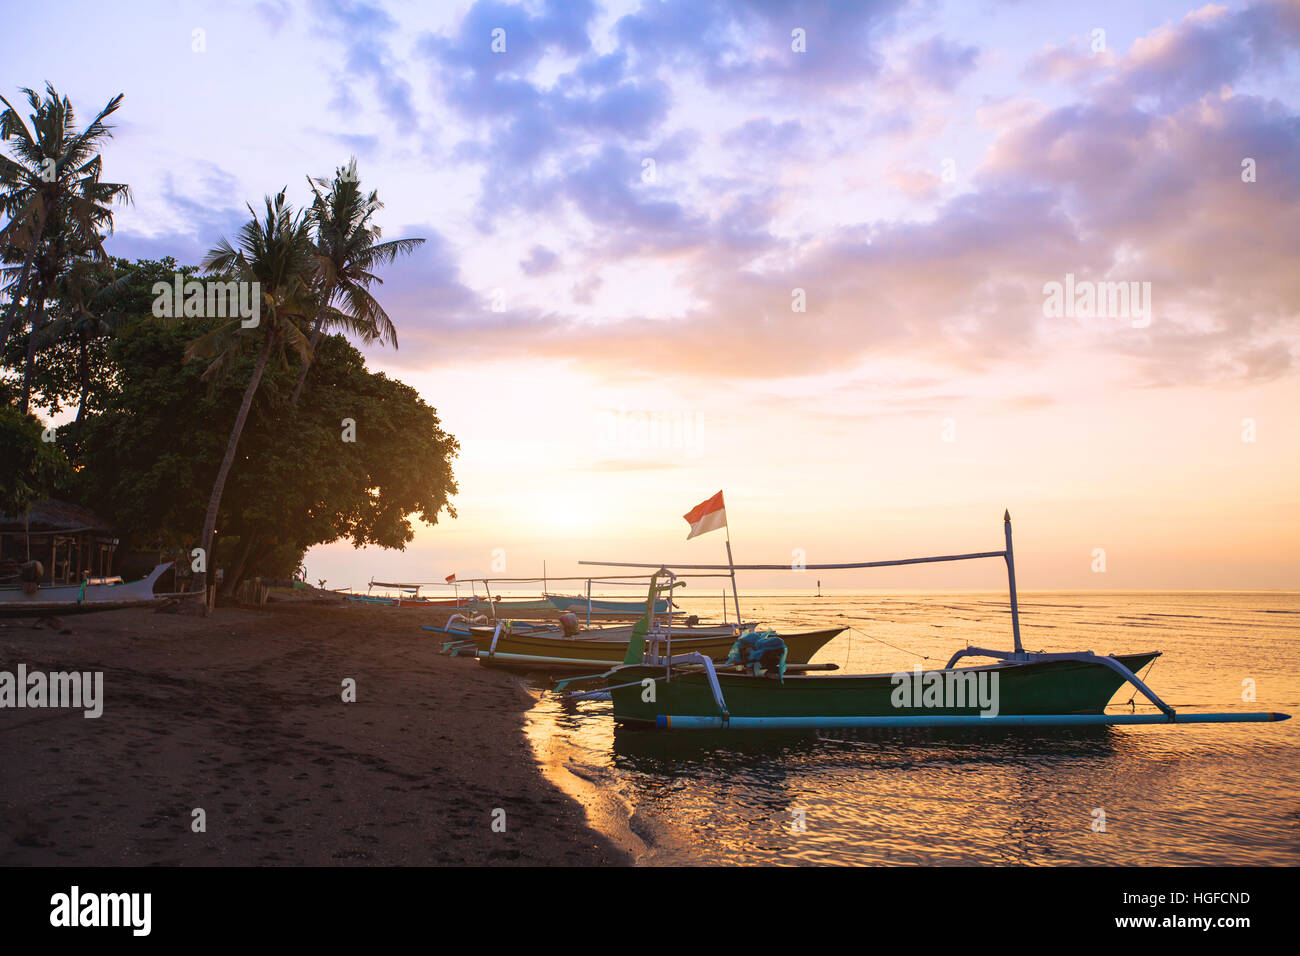 Schöner Strand auf Bali bei Sonnenuntergang, exotische Landschaft mit Boote und Palmen. Stockfoto